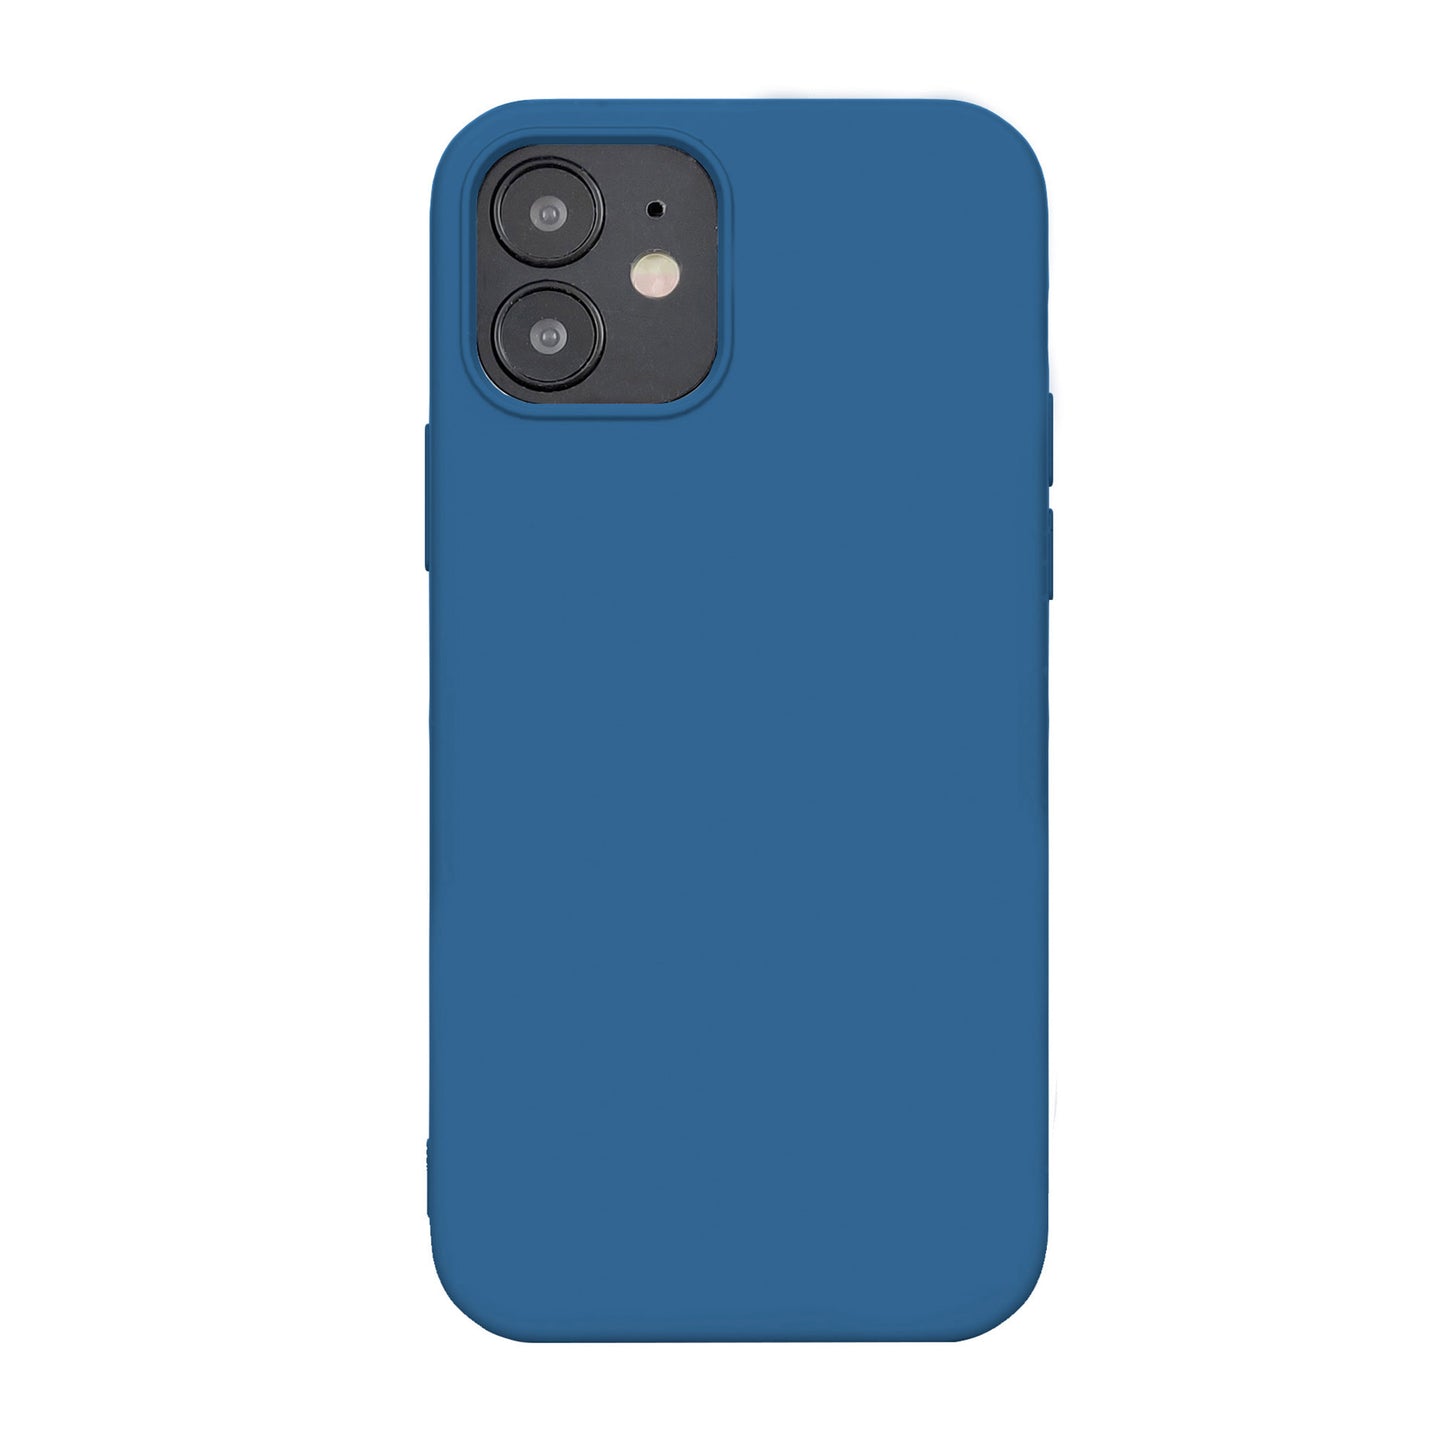 iPhone 12 Mini Uunique Blue Liquid Silicone Case - 15-07596